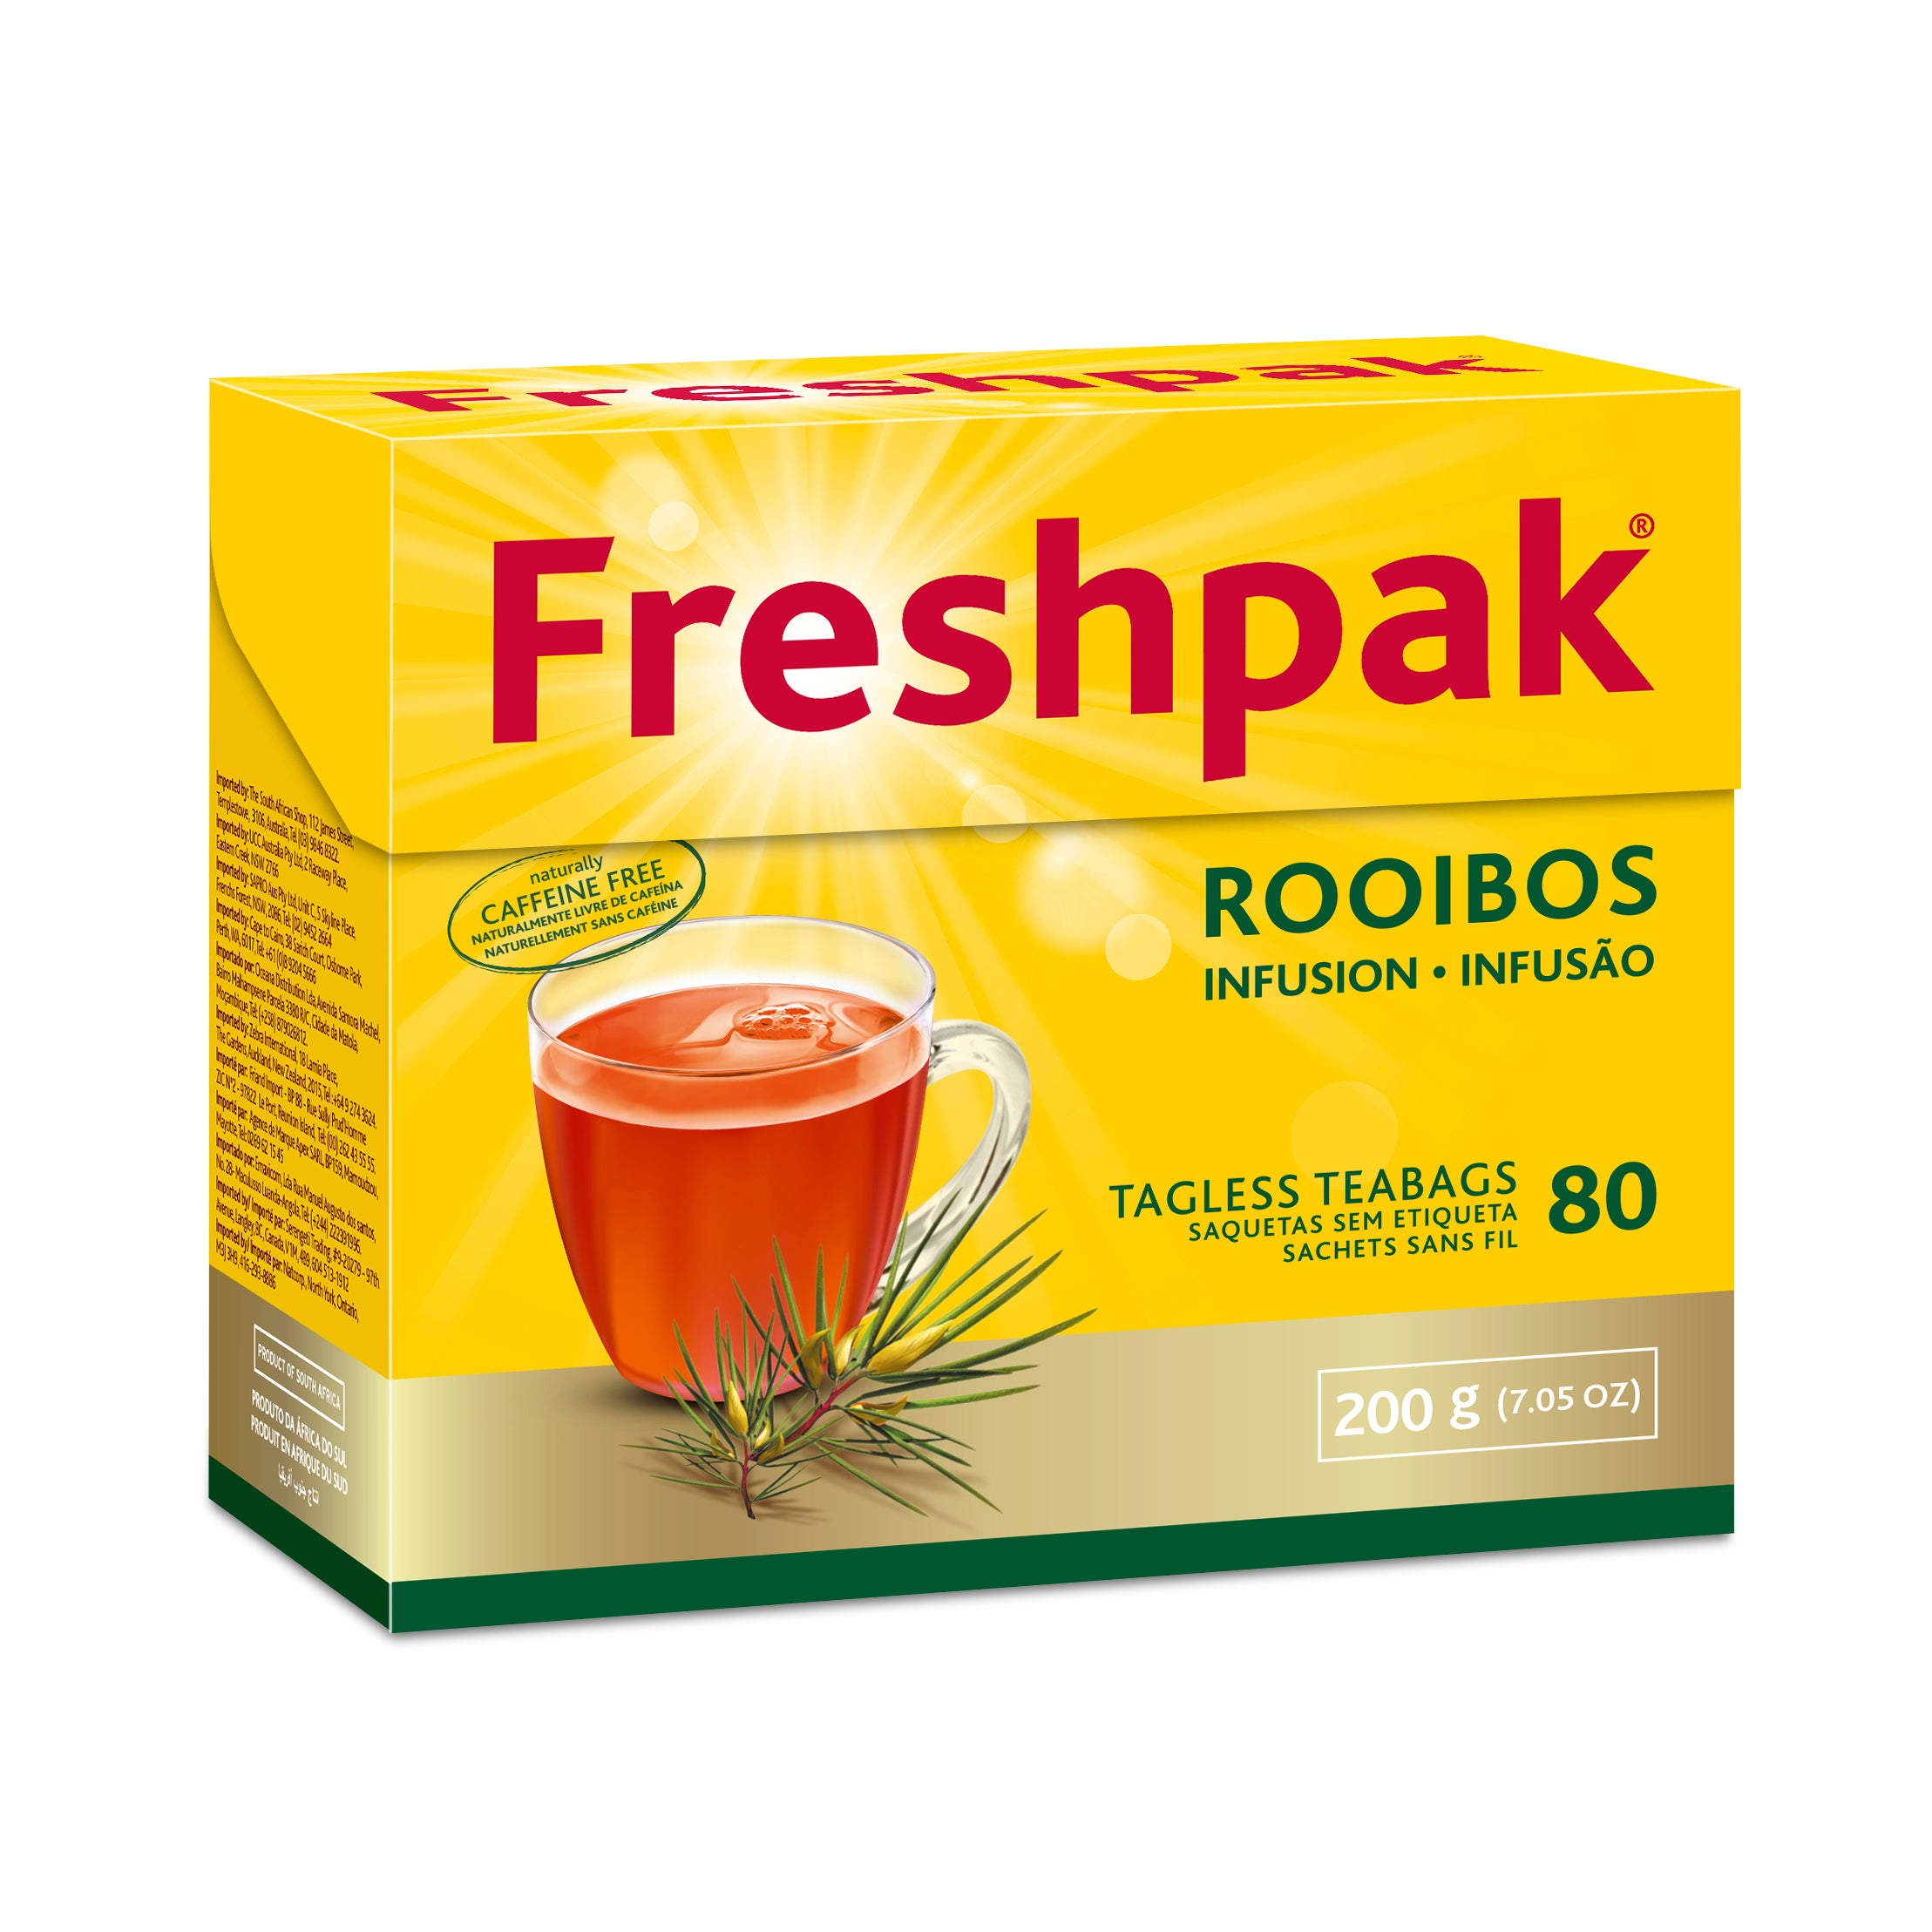 Freshpak Rooibos Tea bags (80 bags/200g) SPECIAL BB AUG 2022